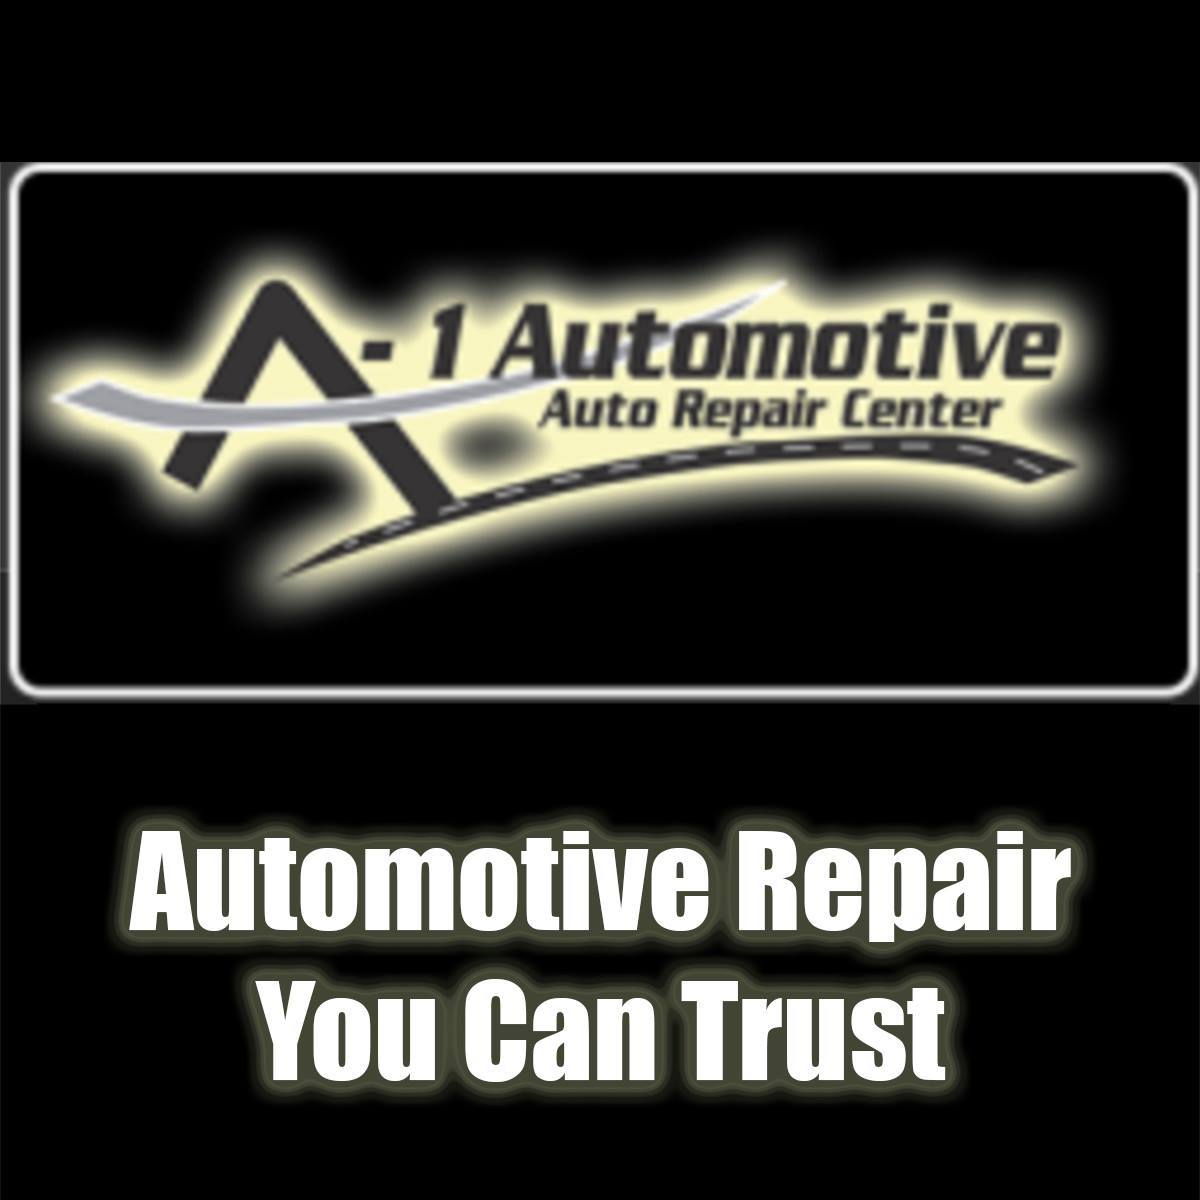 Business logo of A1 Automotive Auto Repair Center